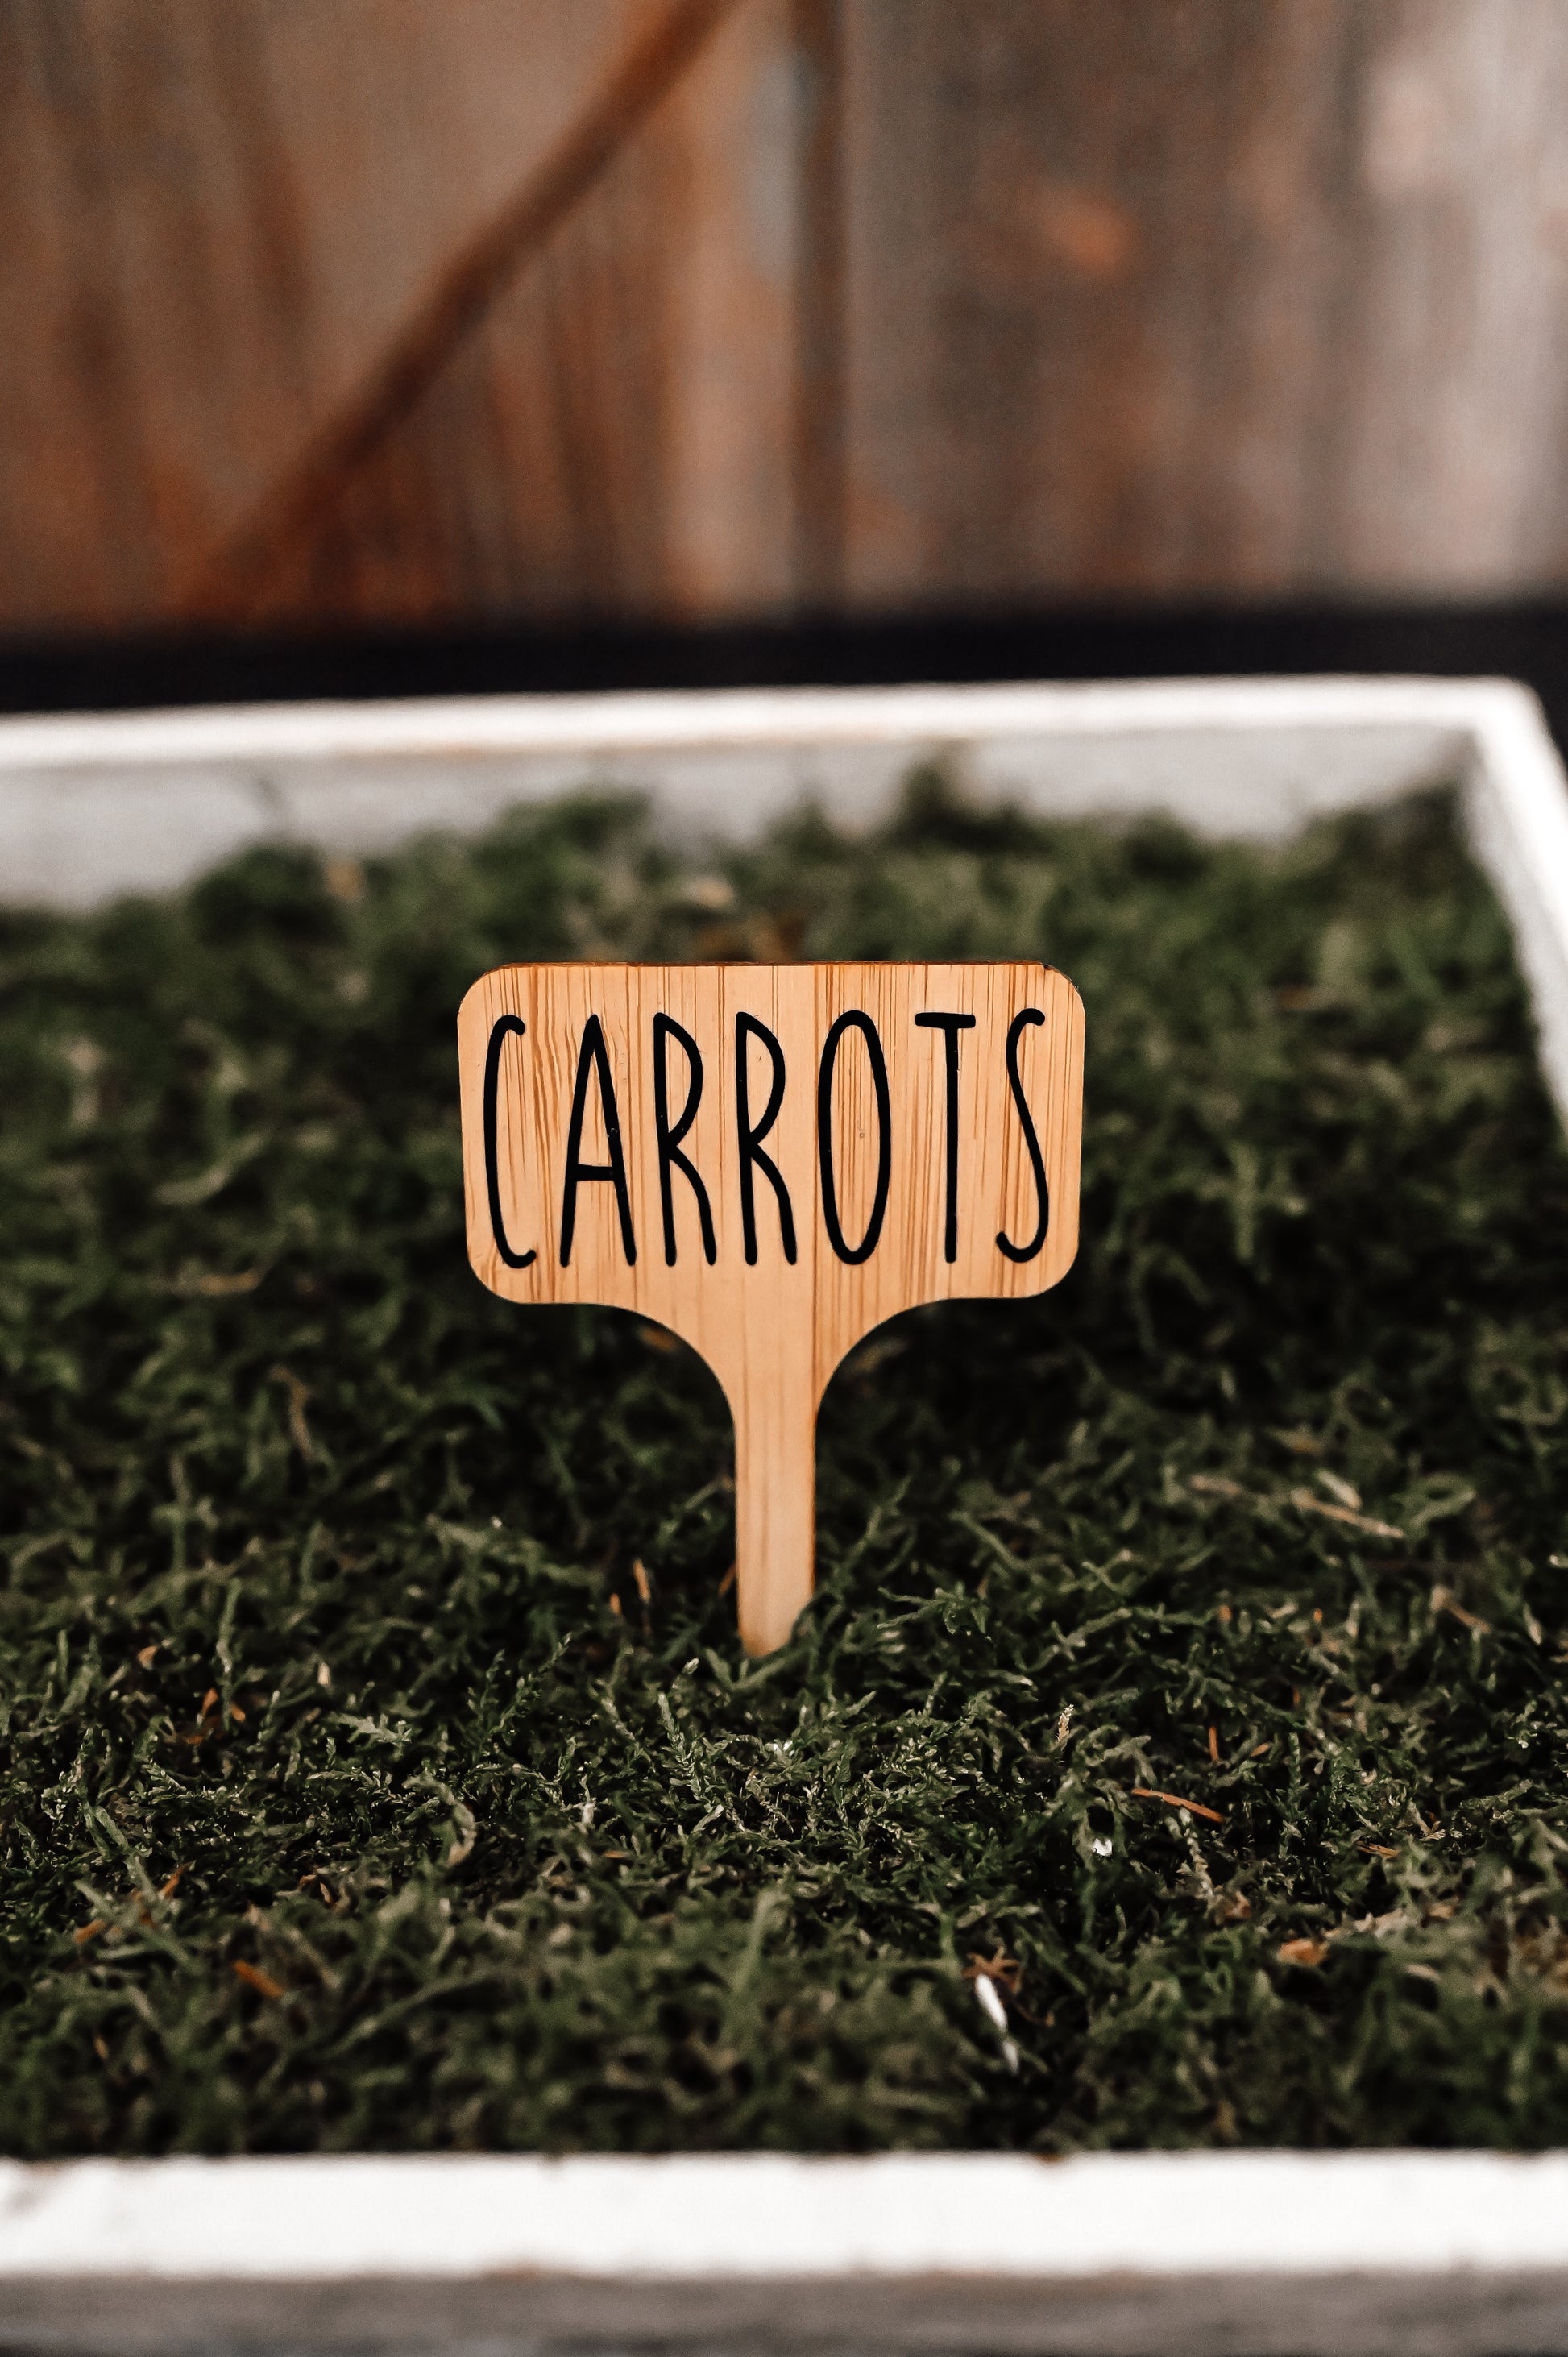 carrots-garden-stake